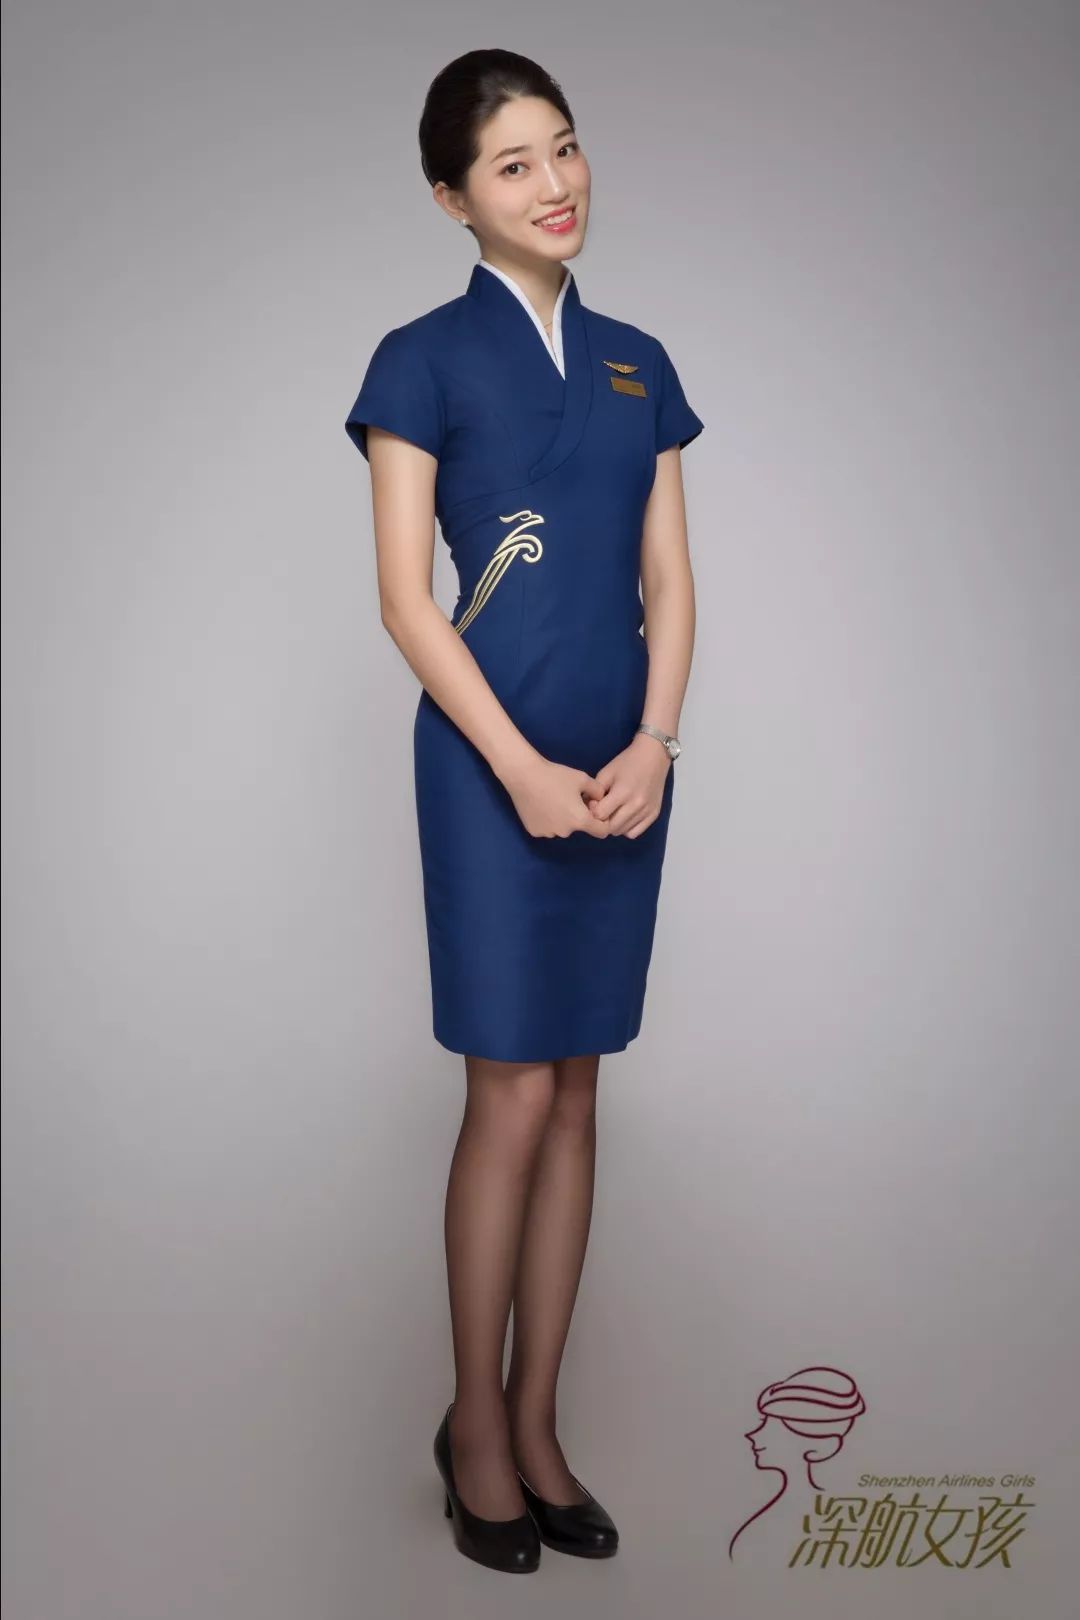 氣質型台灣正妹空姐Livia 紅色比堅尼超吸睛 | Jdailyhk